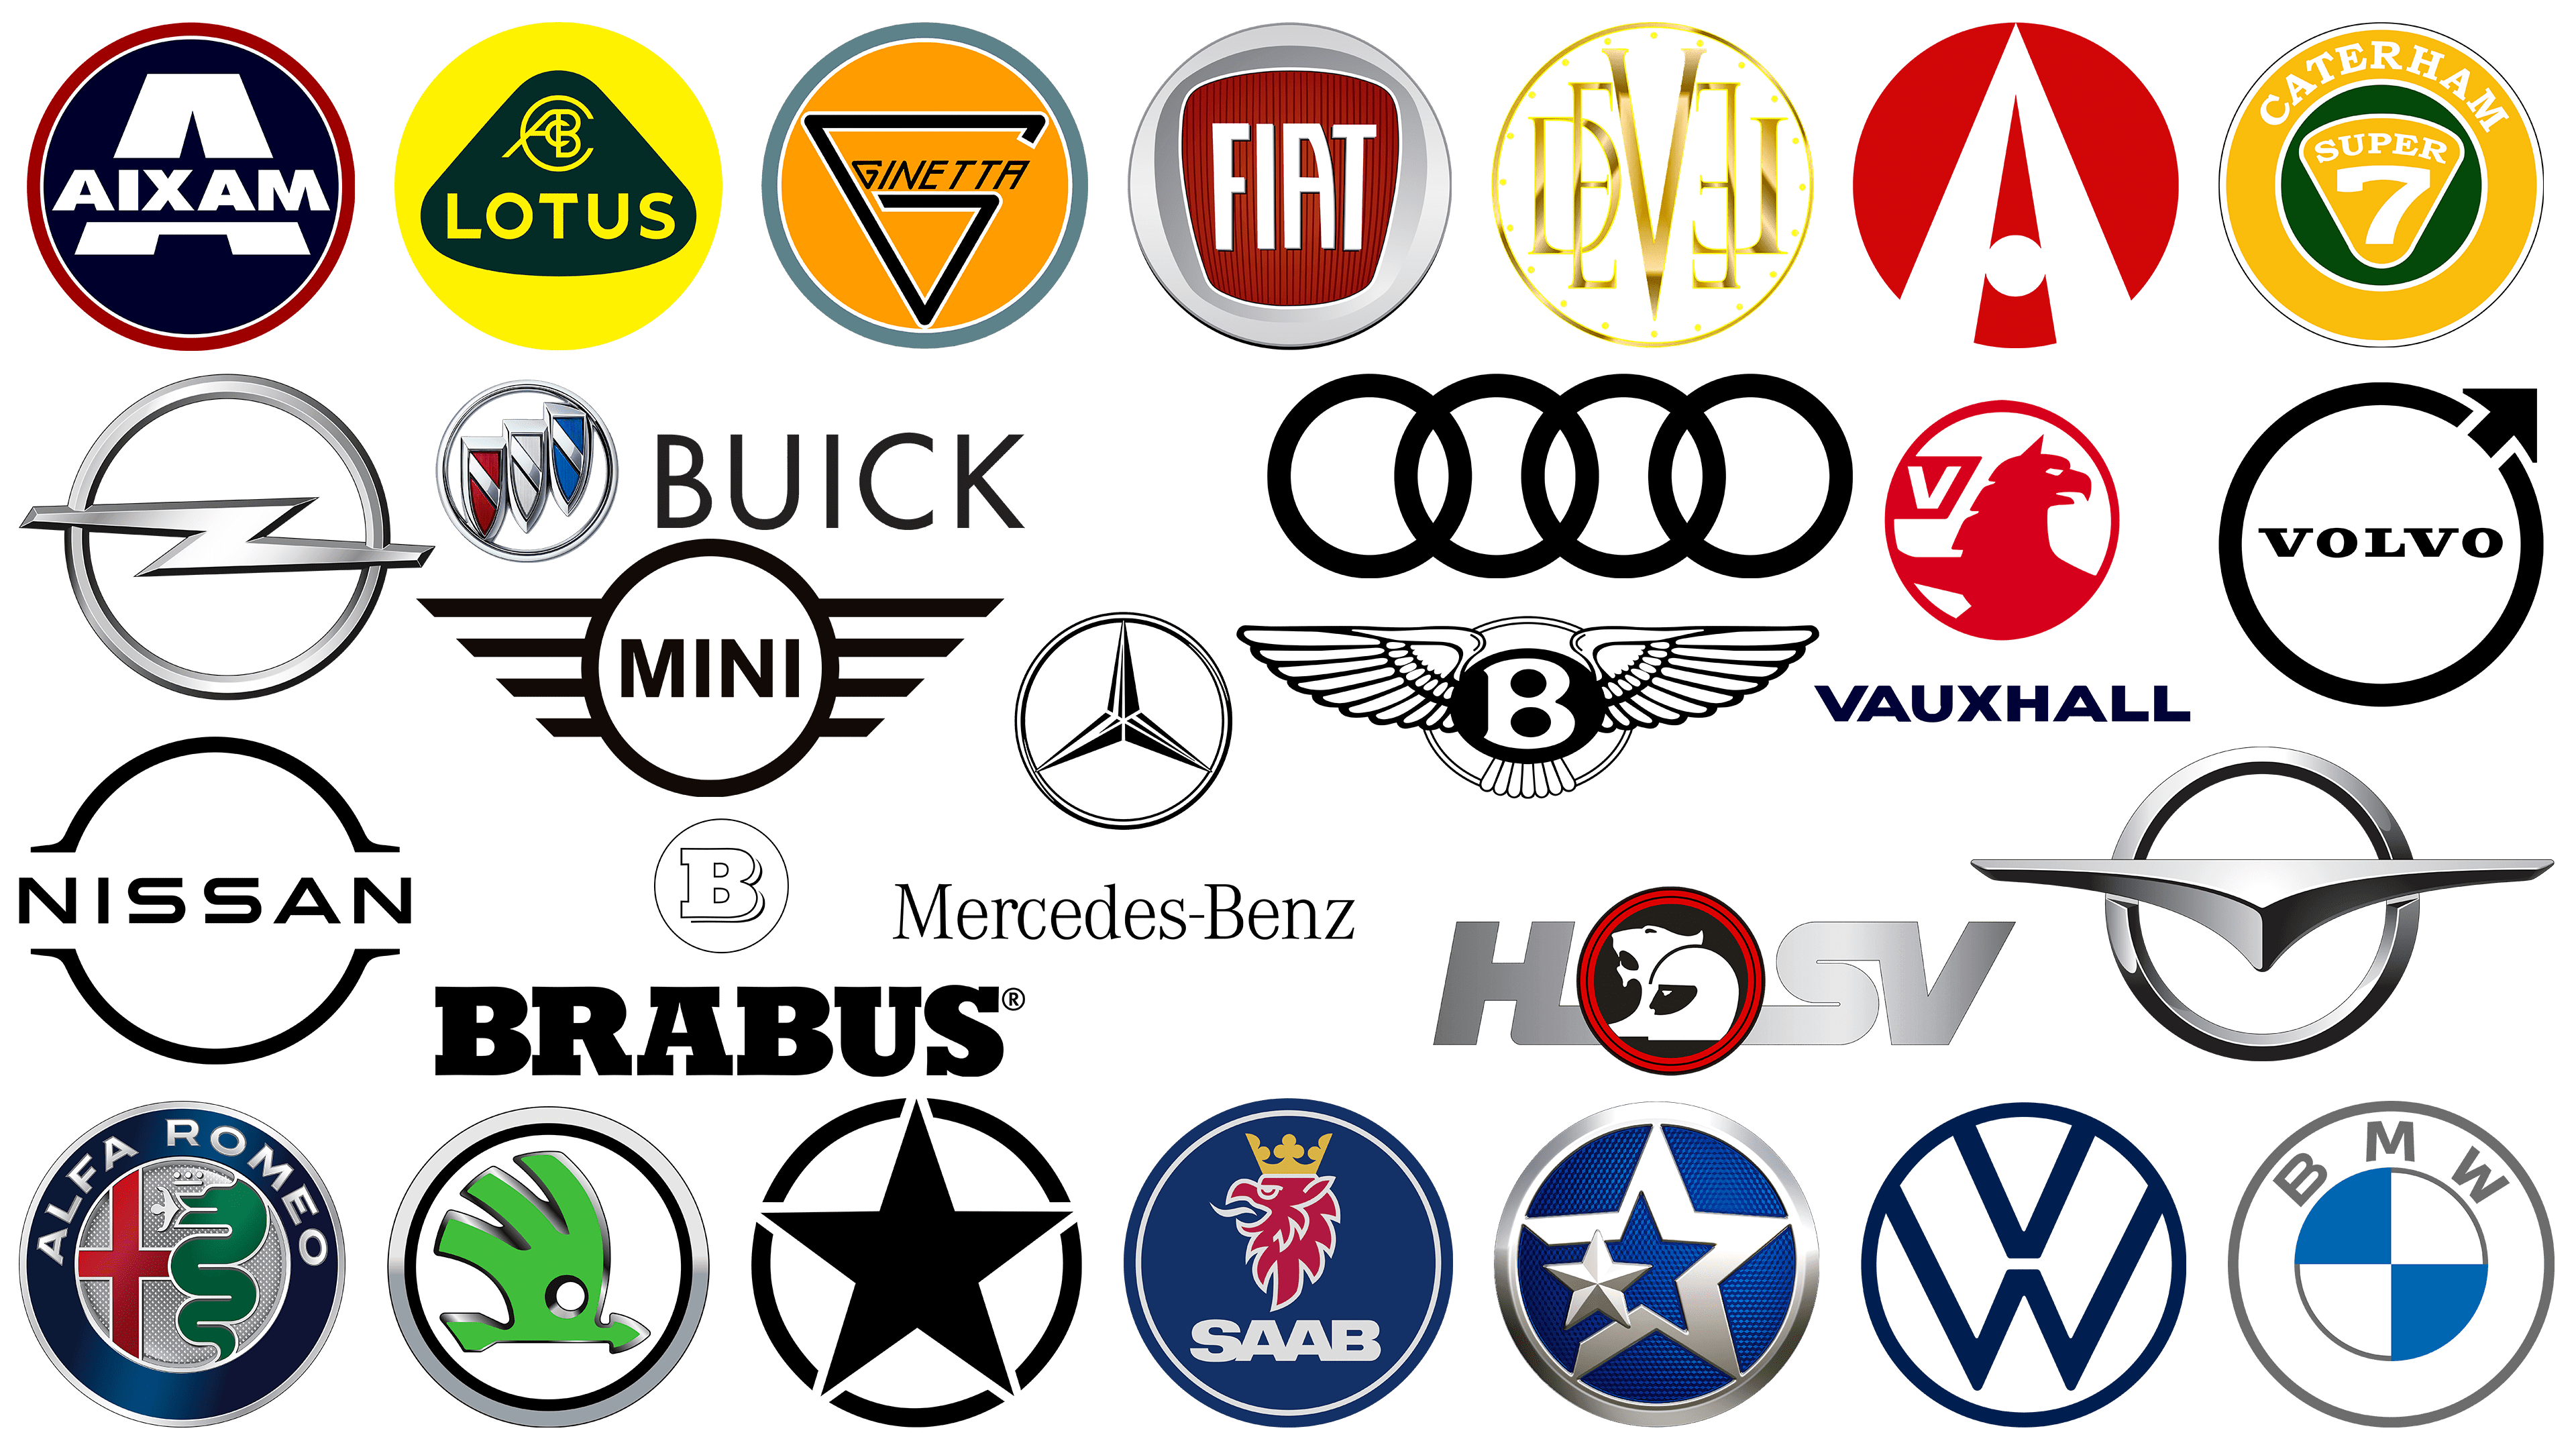 Car Brand Logos | Car brands logos, Car brand, Car logos